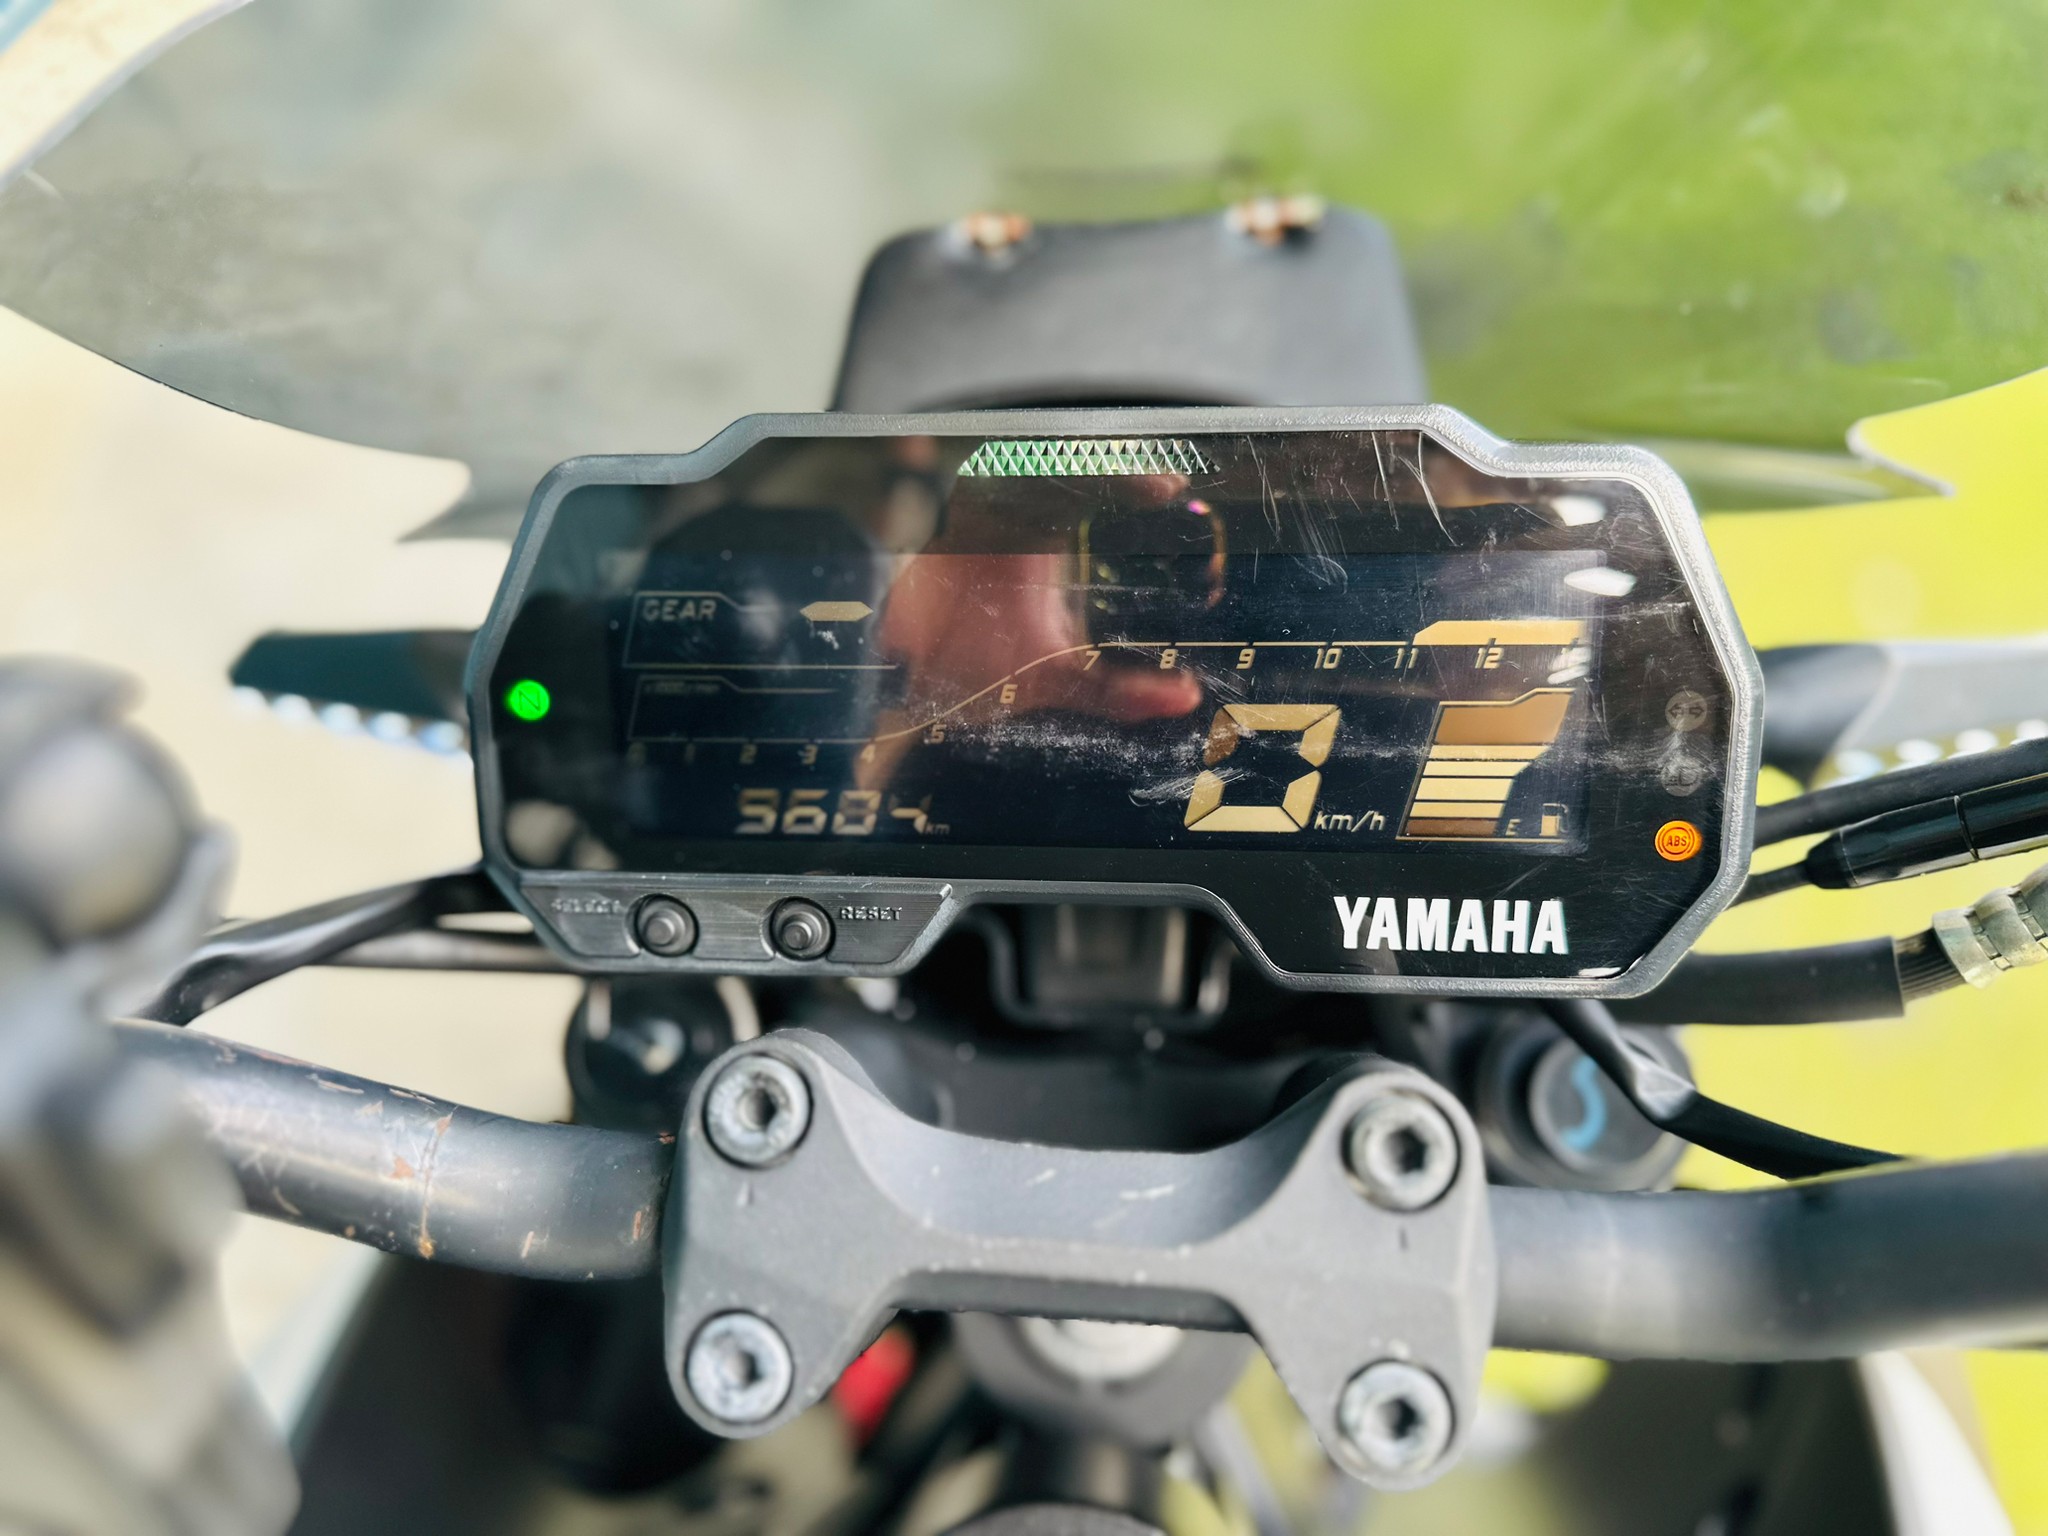 YAMAHA MT-15 - 中古/二手車出售中 Yamaha MT-15 abs 可協助貸款 | 摩托販